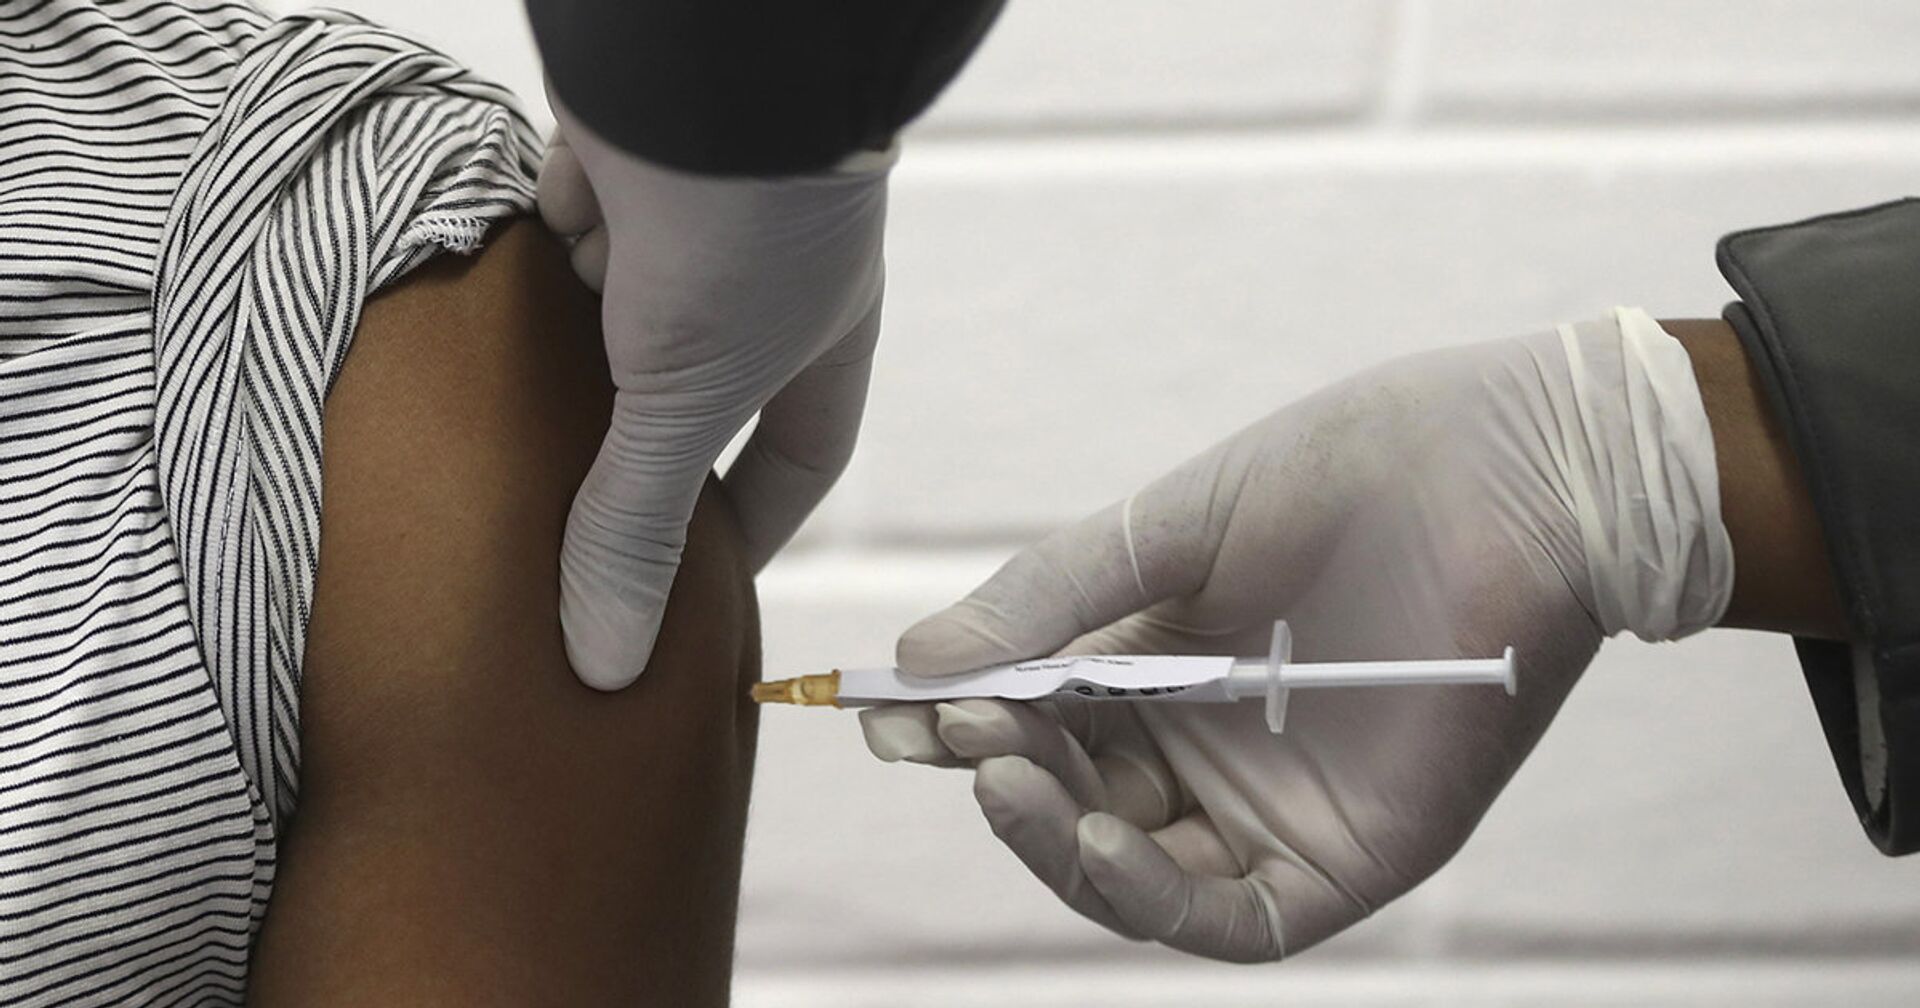 Доброволец получает вакцину от коронавируса в Йоханнесбурге - ИноСМИ, 1920, 26.01.2021